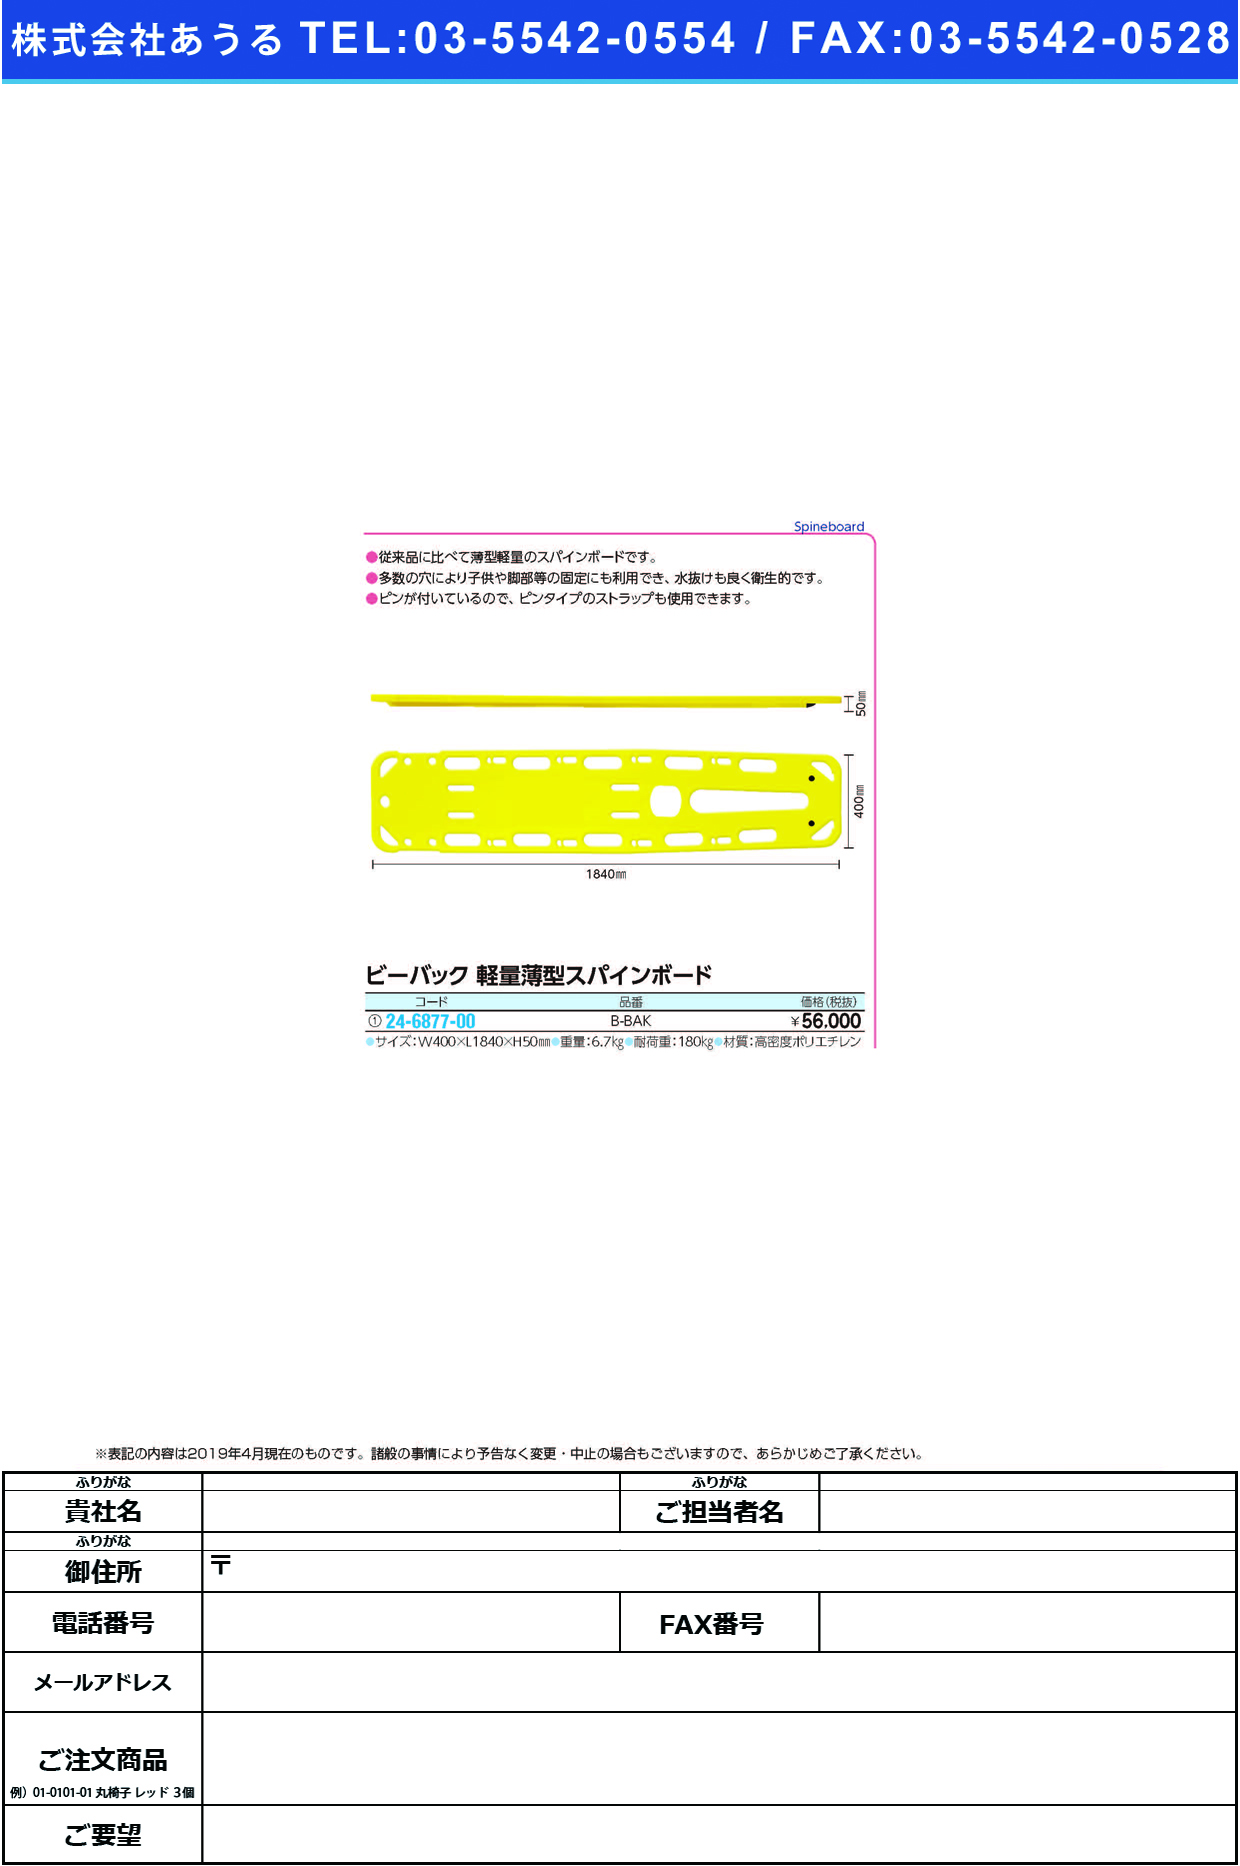 (24-6877-00)ビーバック軽量薄型スパインボード B-BAK ﾋﾞｰﾊﾞｯｸｽﾊﾟｲﾝﾎﾞｰﾄﾞ【1台単位】【2019年カタログ商品】